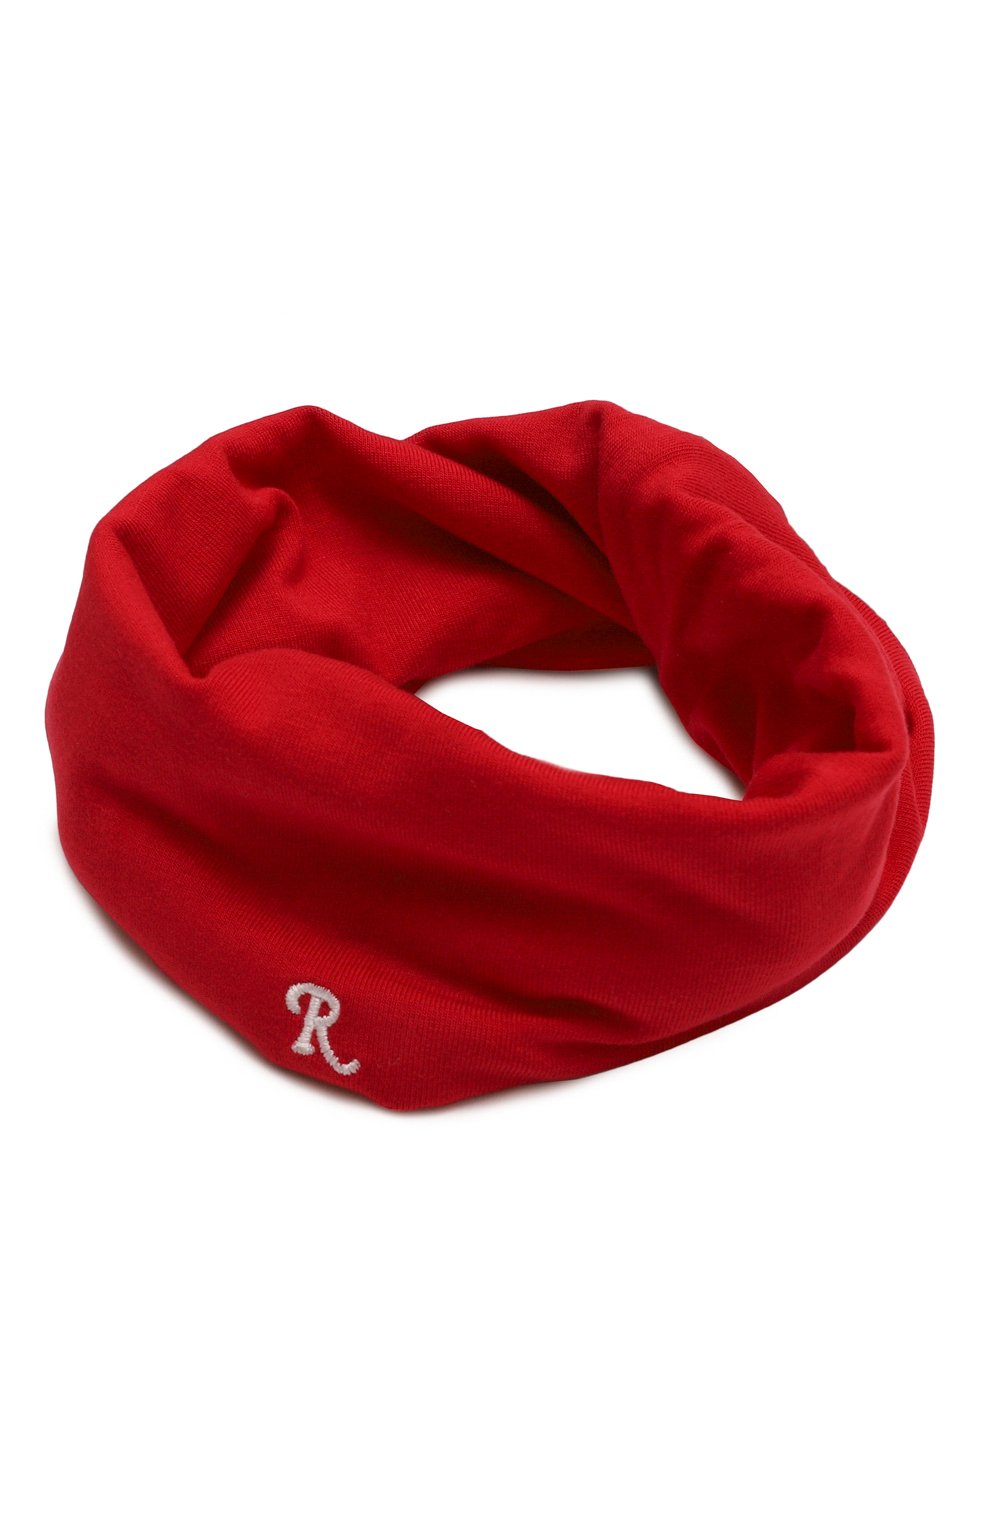 Фото Женский красный шарф-снуд RAF SIMONS, арт. 212-944-19016 Португалия 212-944-19016 